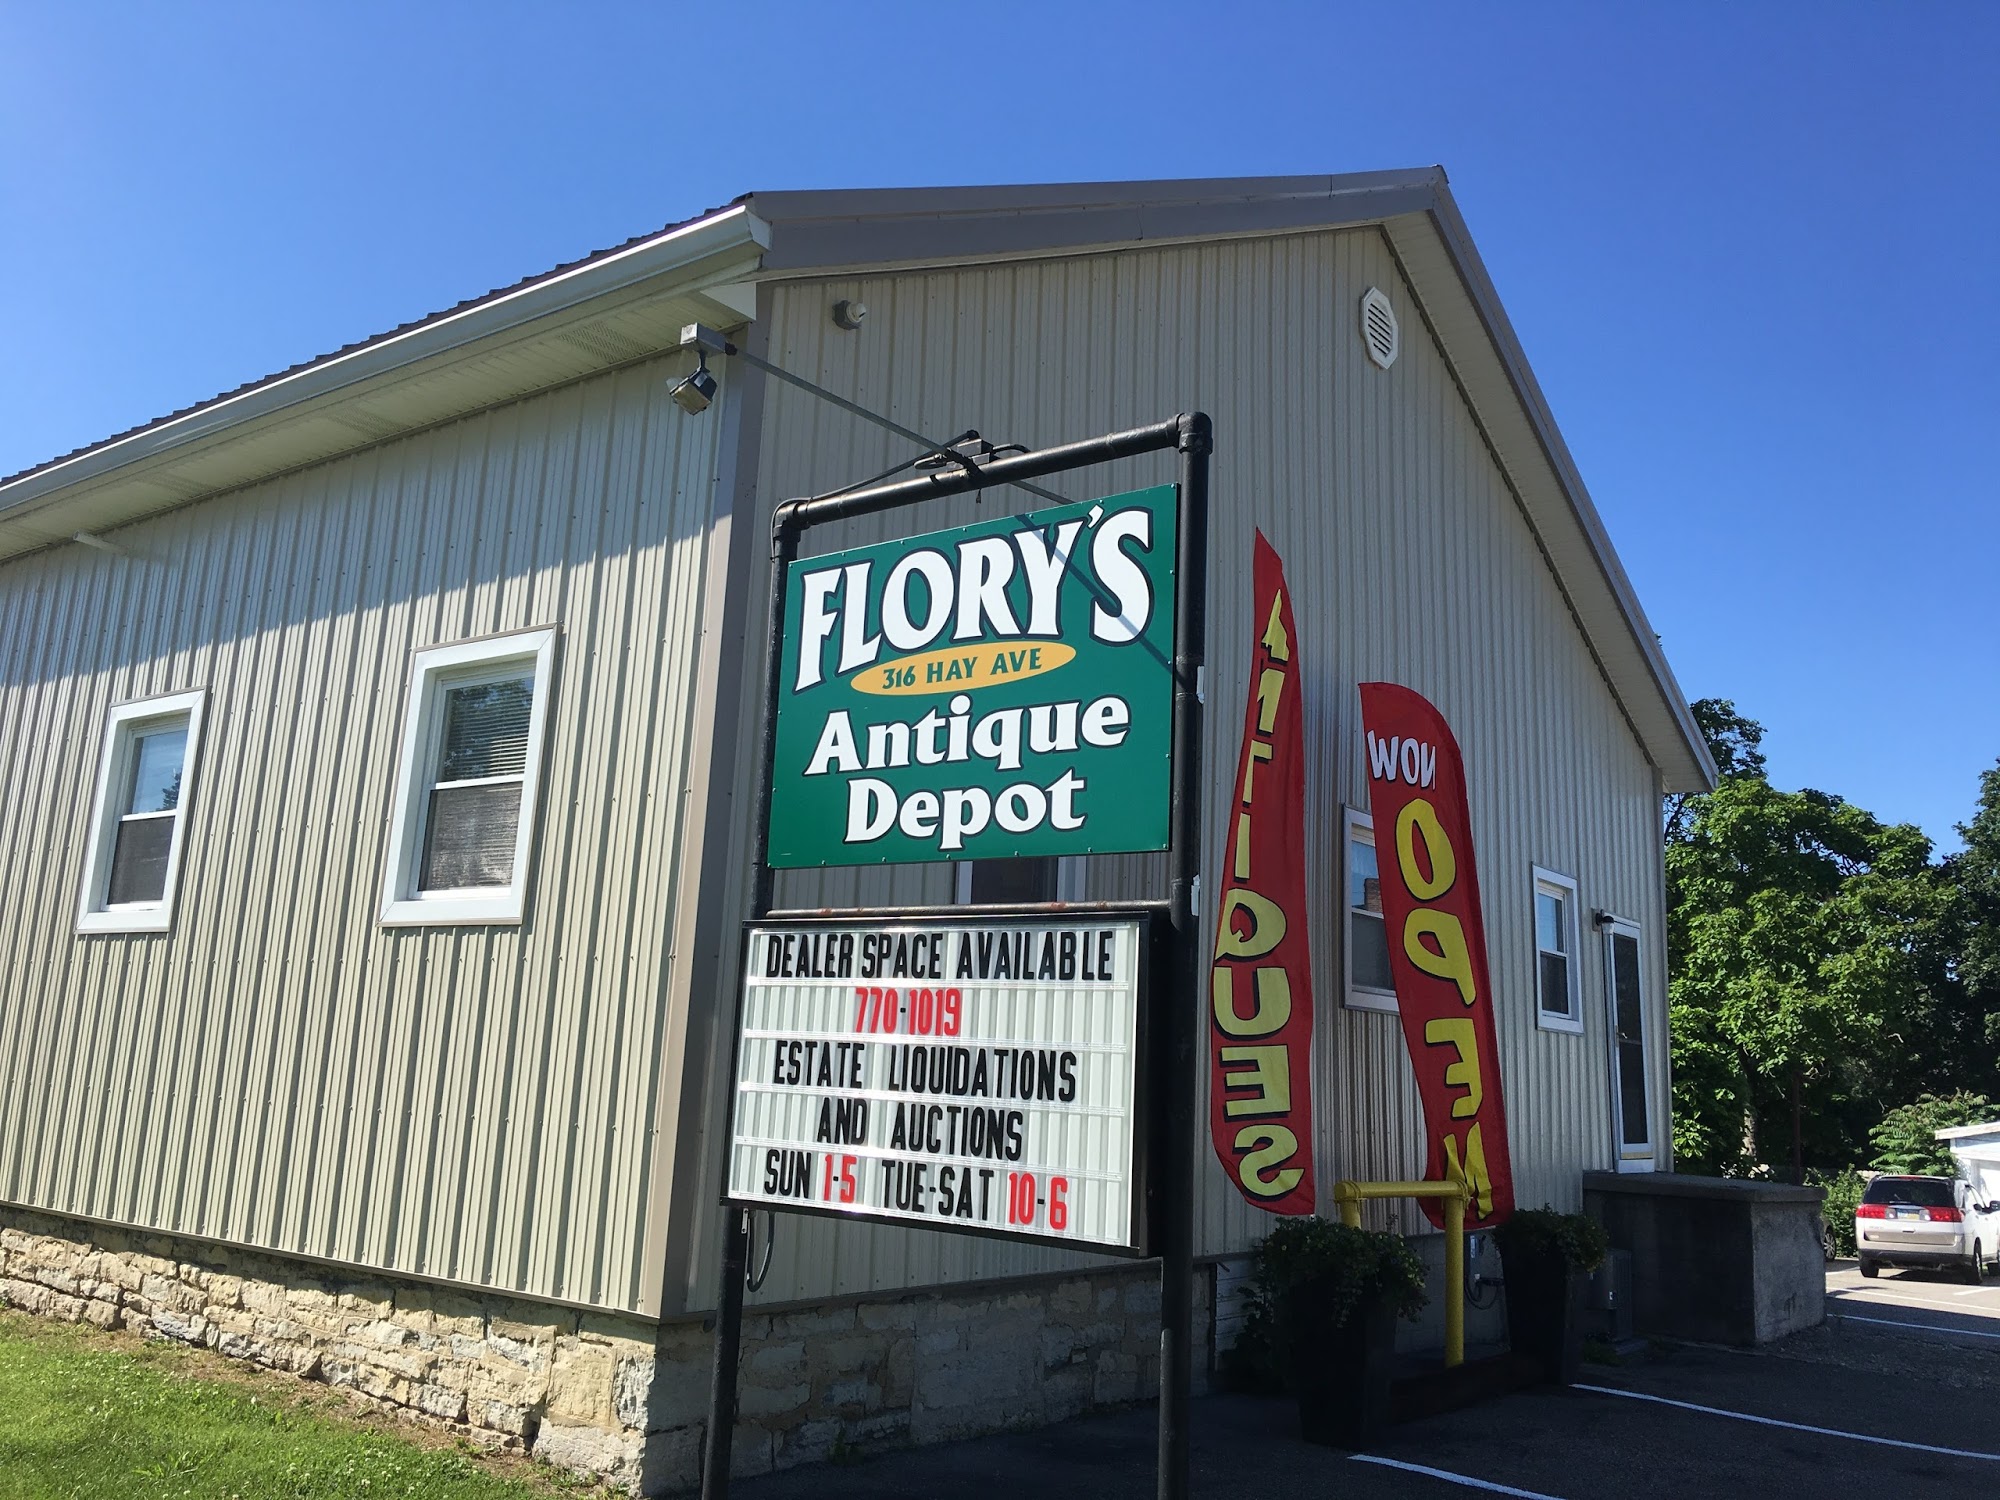 Flory's Antique Depot